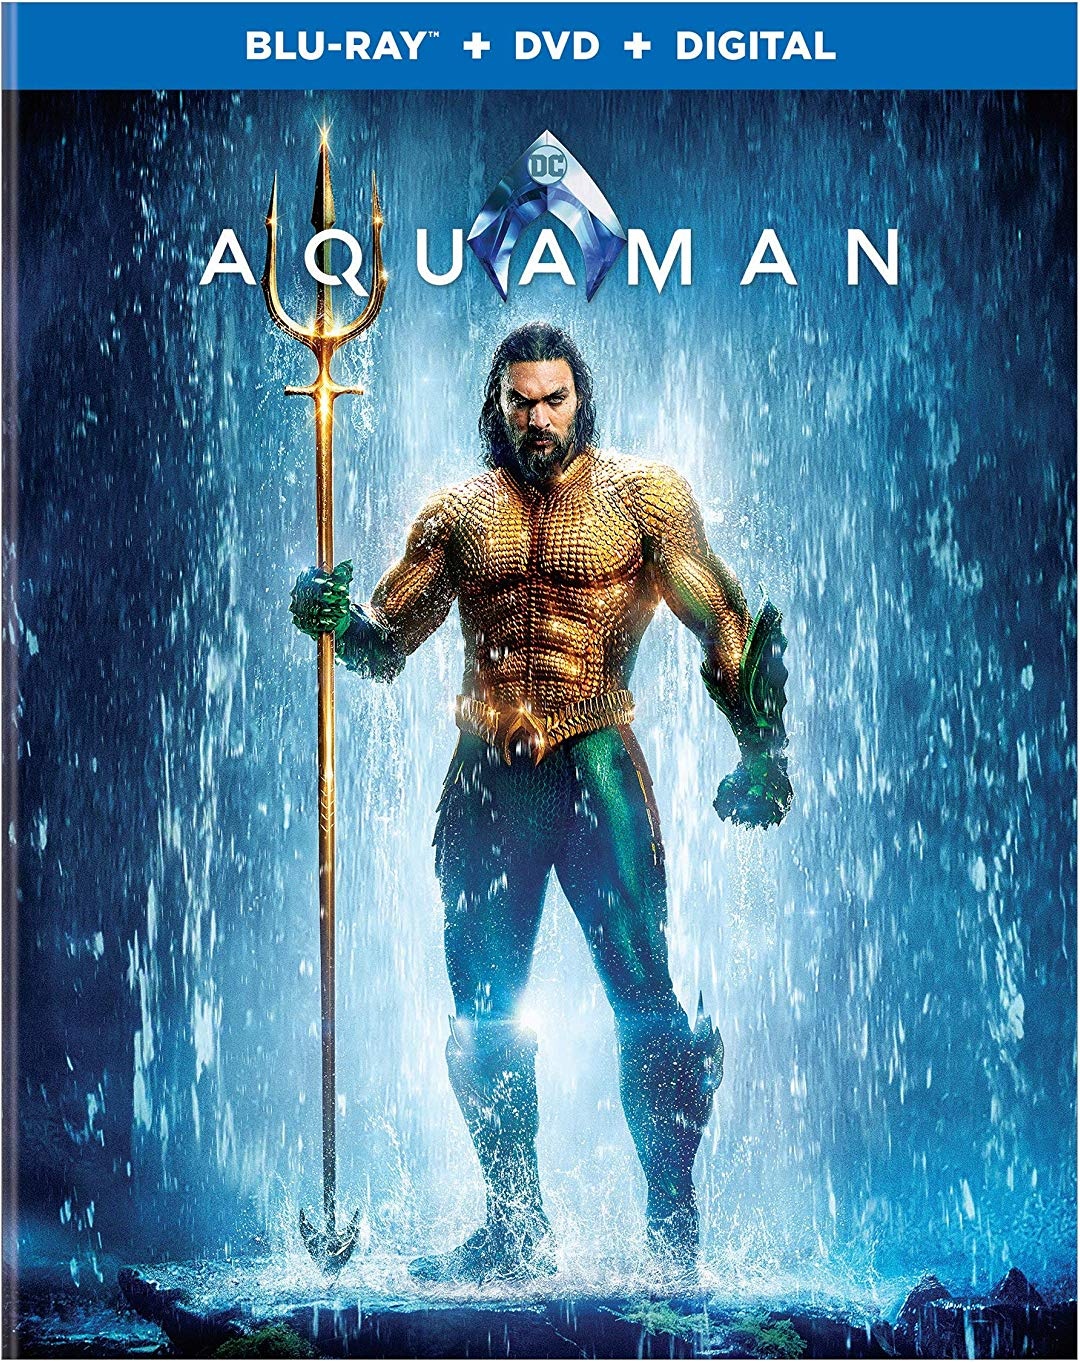 [海王].Aquaman.2018.UHD.BluRay.2160p.HEVC.TrueHD.7.1-sGnb@CHDBits   83.14G-2.jpg